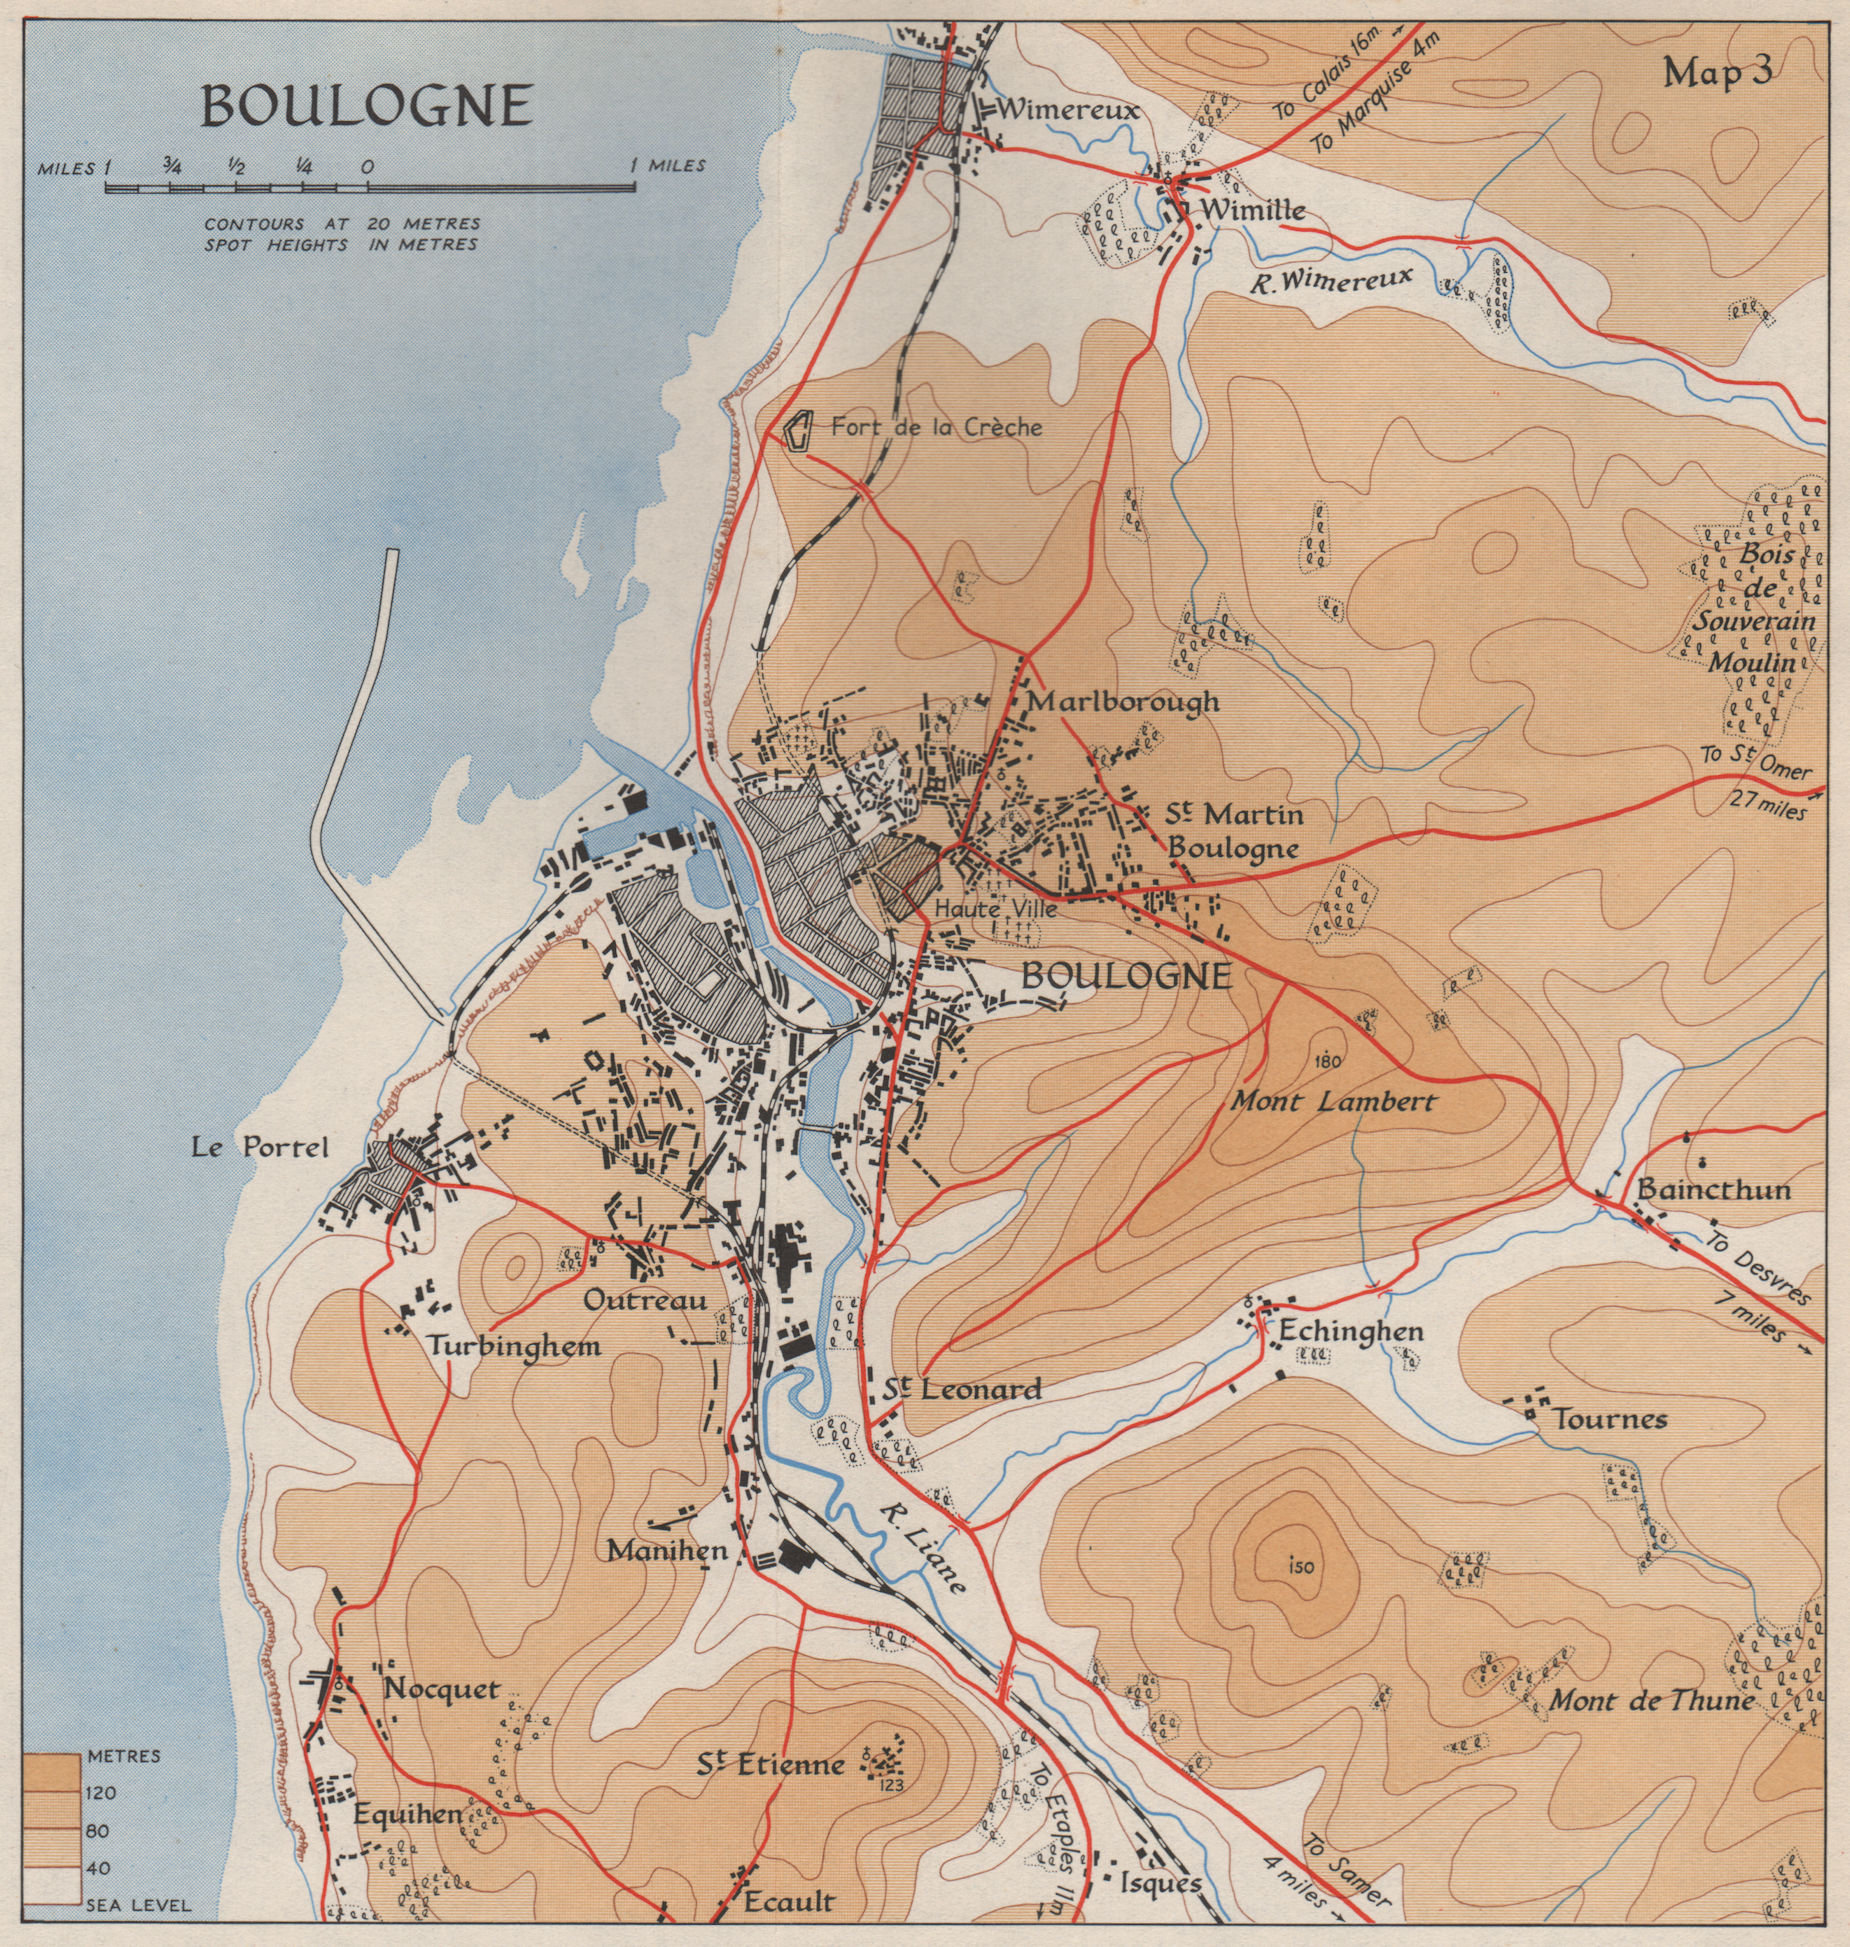 BOULOGNE town plan & environs in 1940. Pas-de-Calais. Wimereux Portel 1953 map